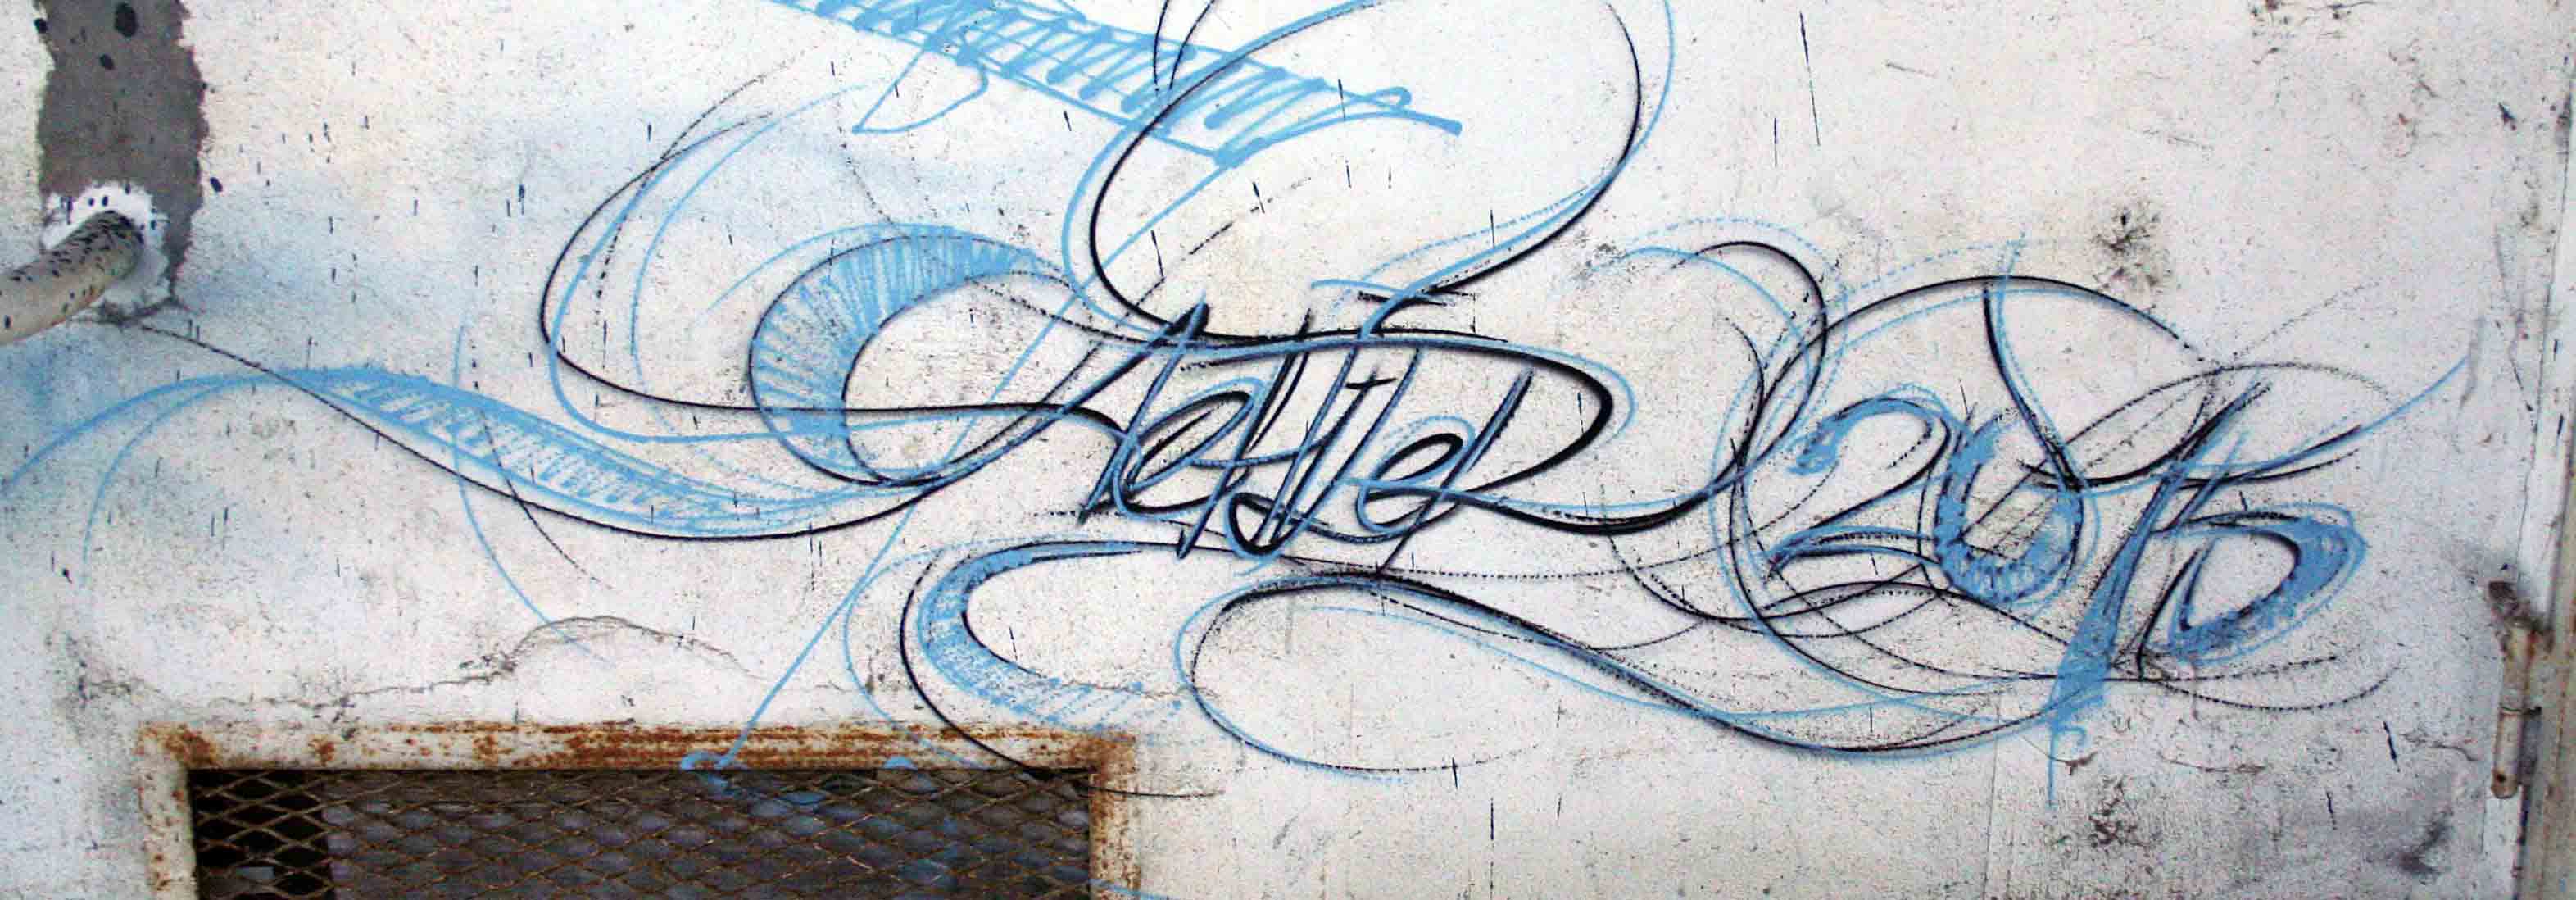 signature des fresques de frédéric michel-langlet